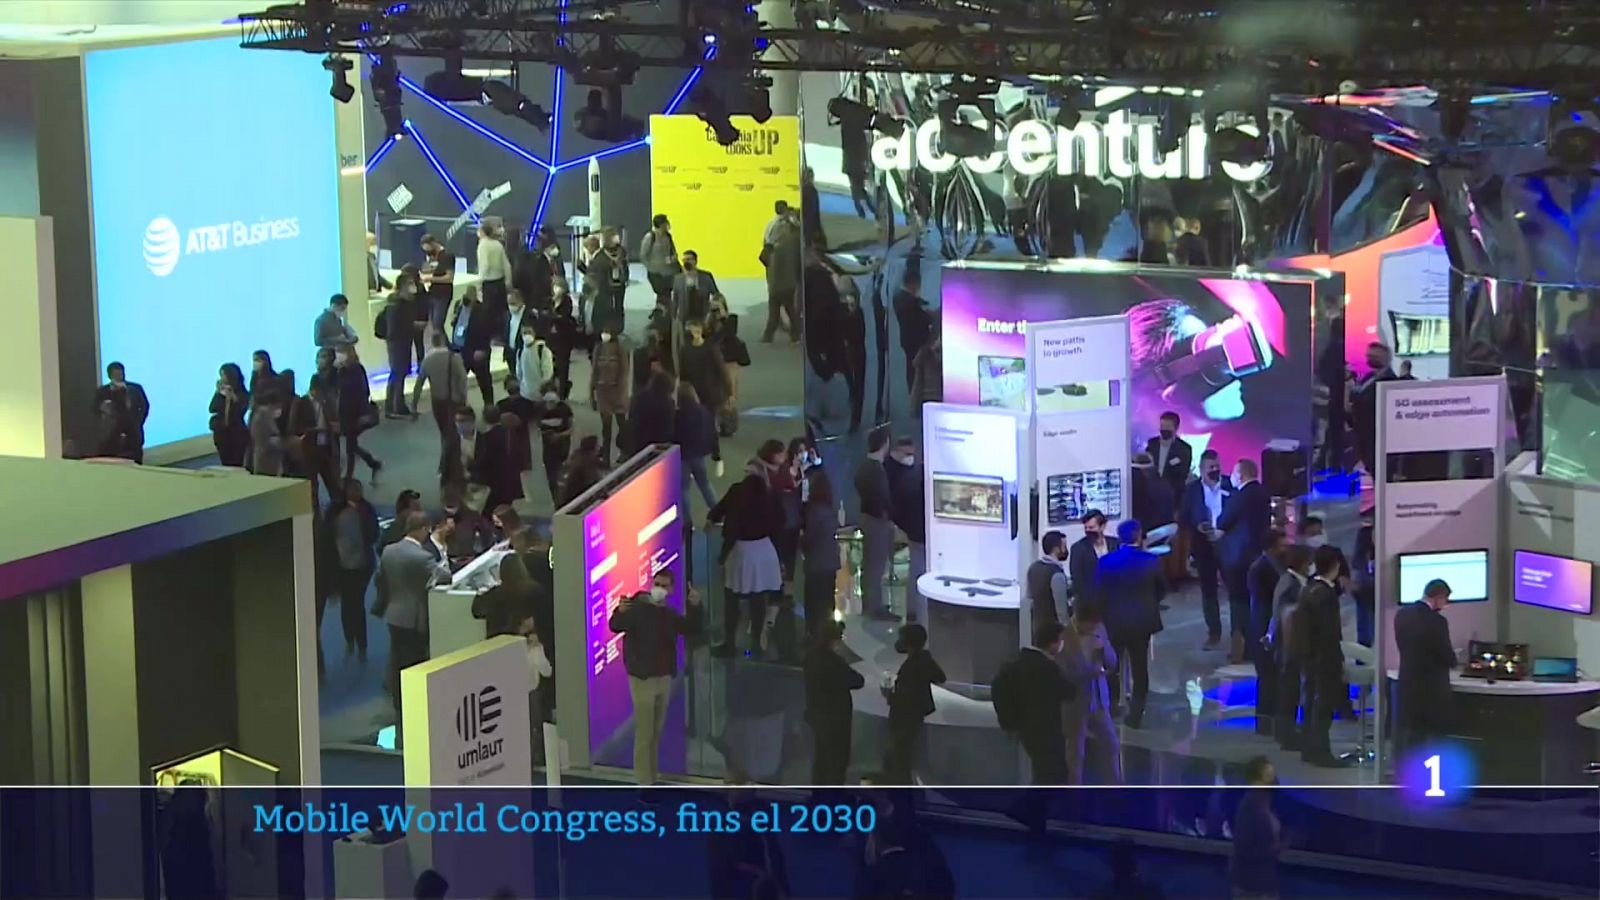 El Mobile World Congress, fins el 2030: l'aposta per Barcelona s'allarga 6 anys més